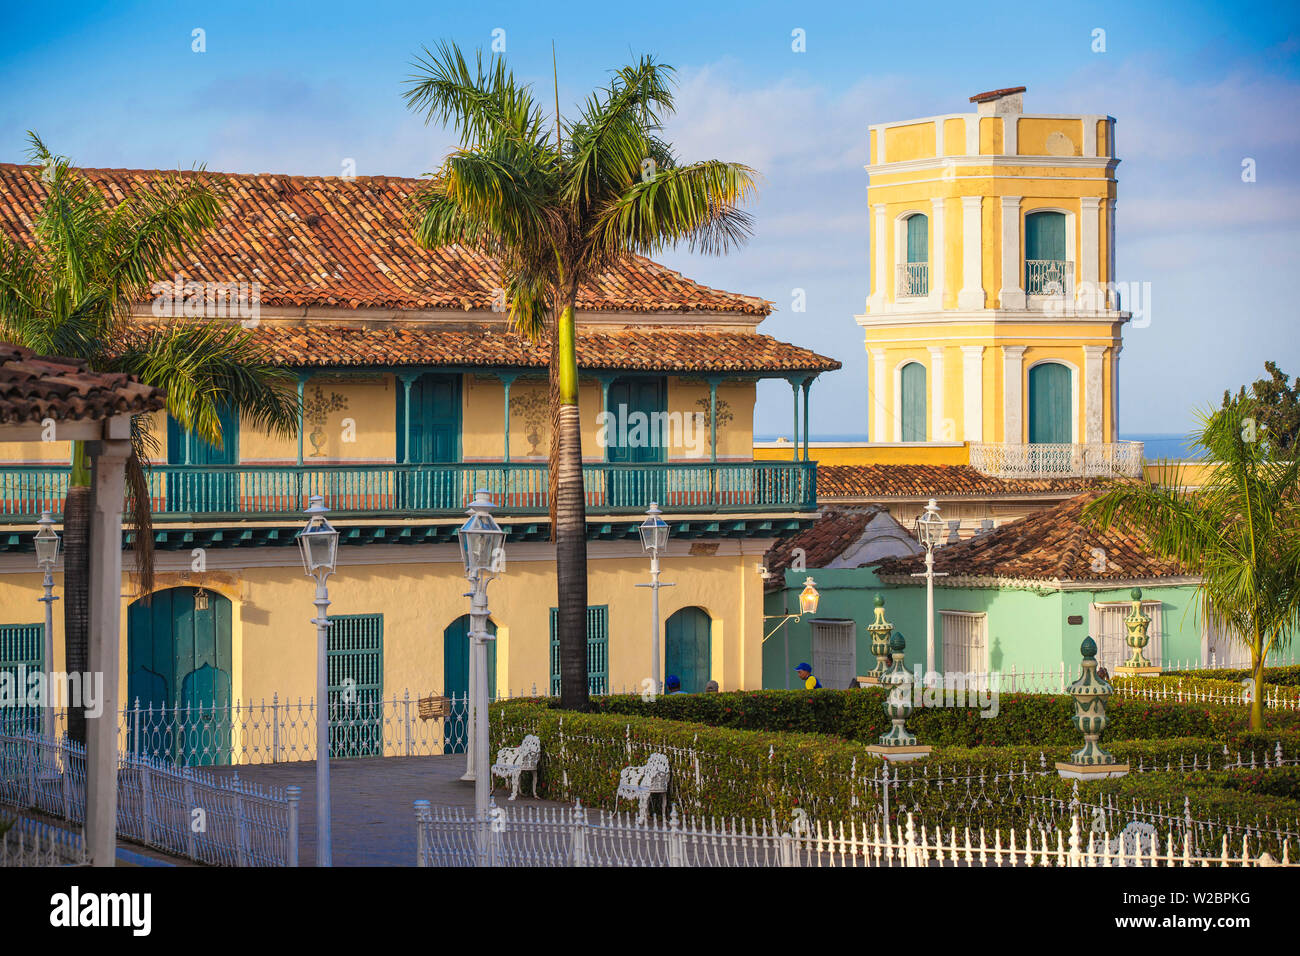 Cuba, Trinidad, Plaza Mayor, Galeria de Arte presso l'ex Palacio Ortiz - La Casa de Aldeman Ortiz - un palazzo coloniale dal 1809 che è stato originariamente costruito per Ortiz de Zuniga, un commerciante di schiavi e sindaco di Trinidad. Foto Stock